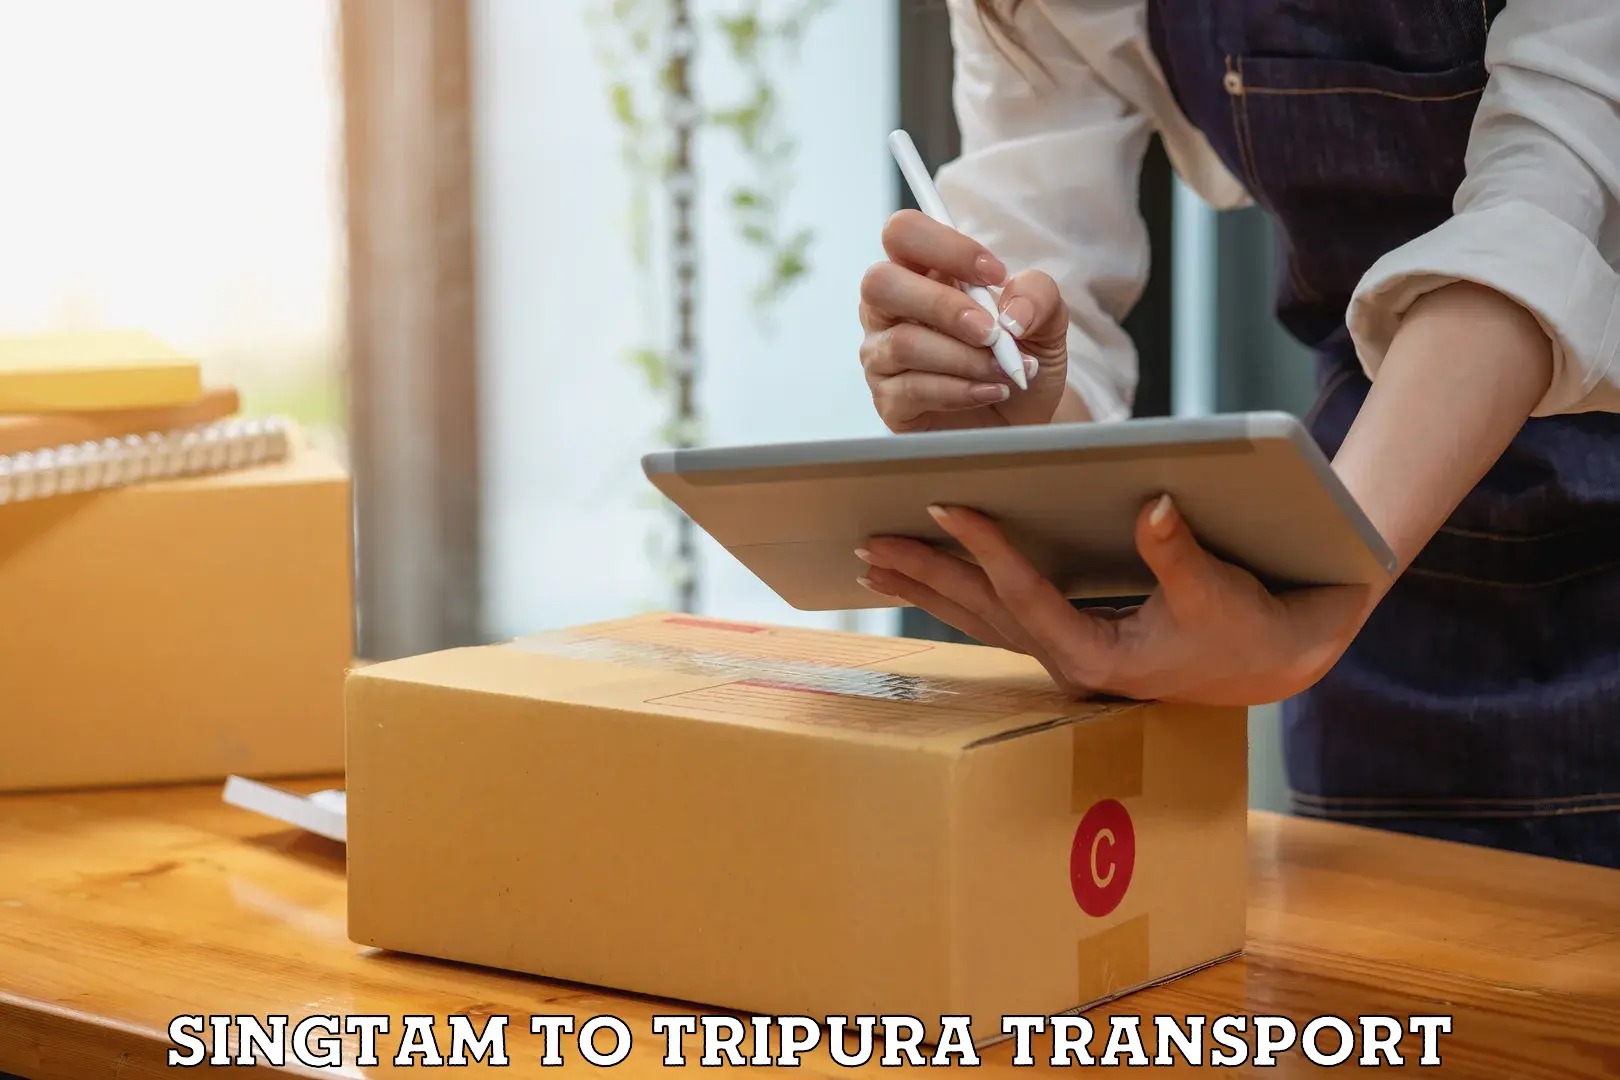 International cargo transportation services Singtam to South Tripura